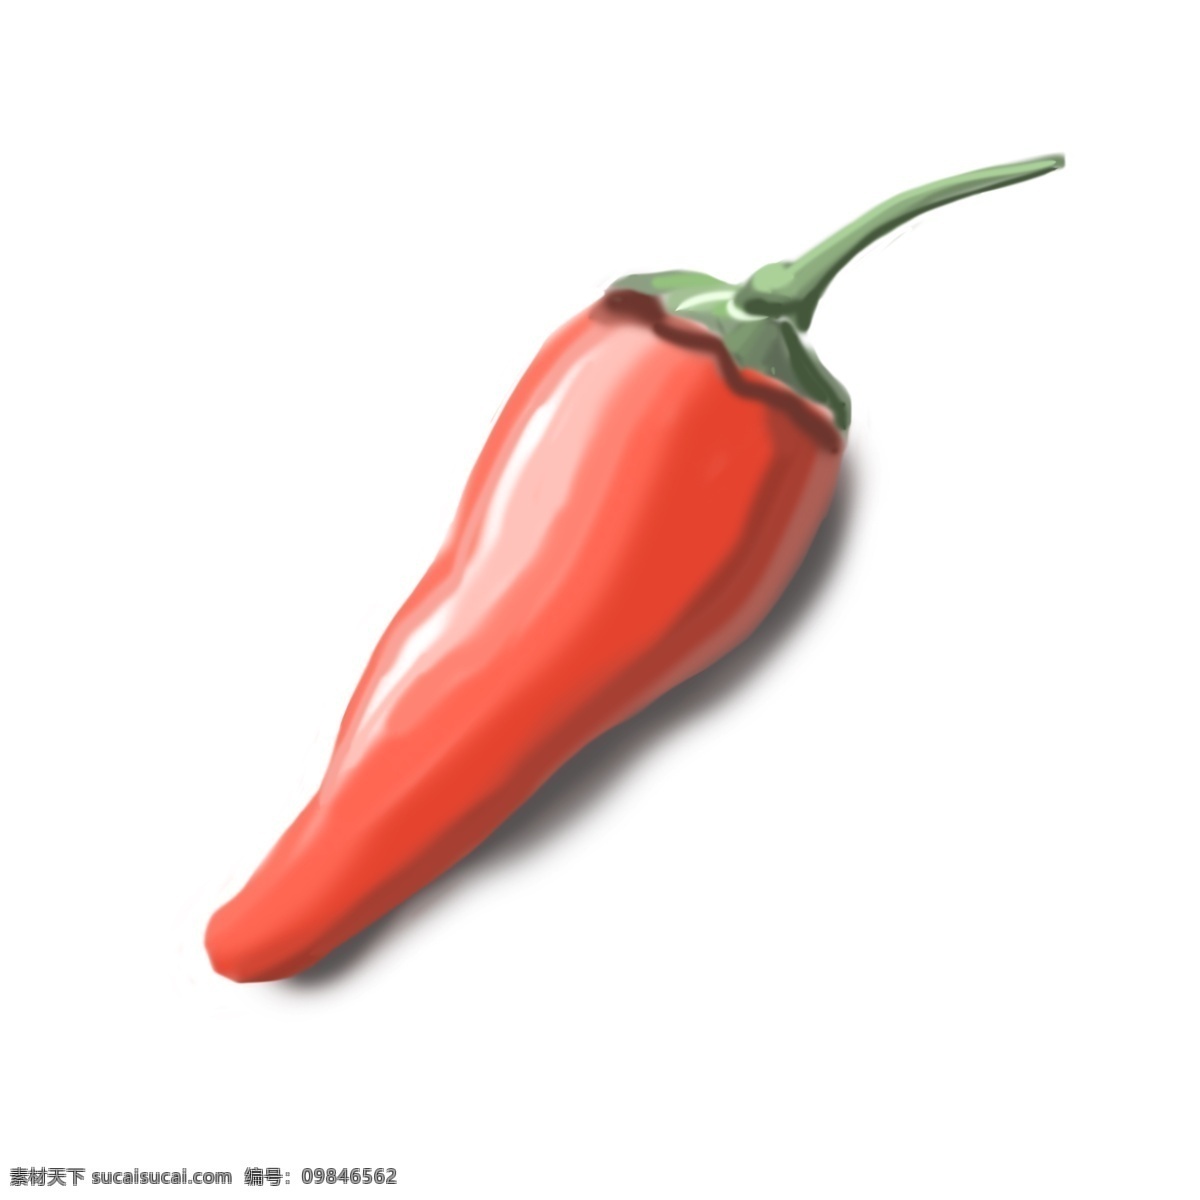 辣椒 主题 红 卡通 风格 手绘 红色 老椒 尖椒 菜椒 蔬菜 烹饪 作料 美味 食品 可口菜 漫画风格 插画手绘